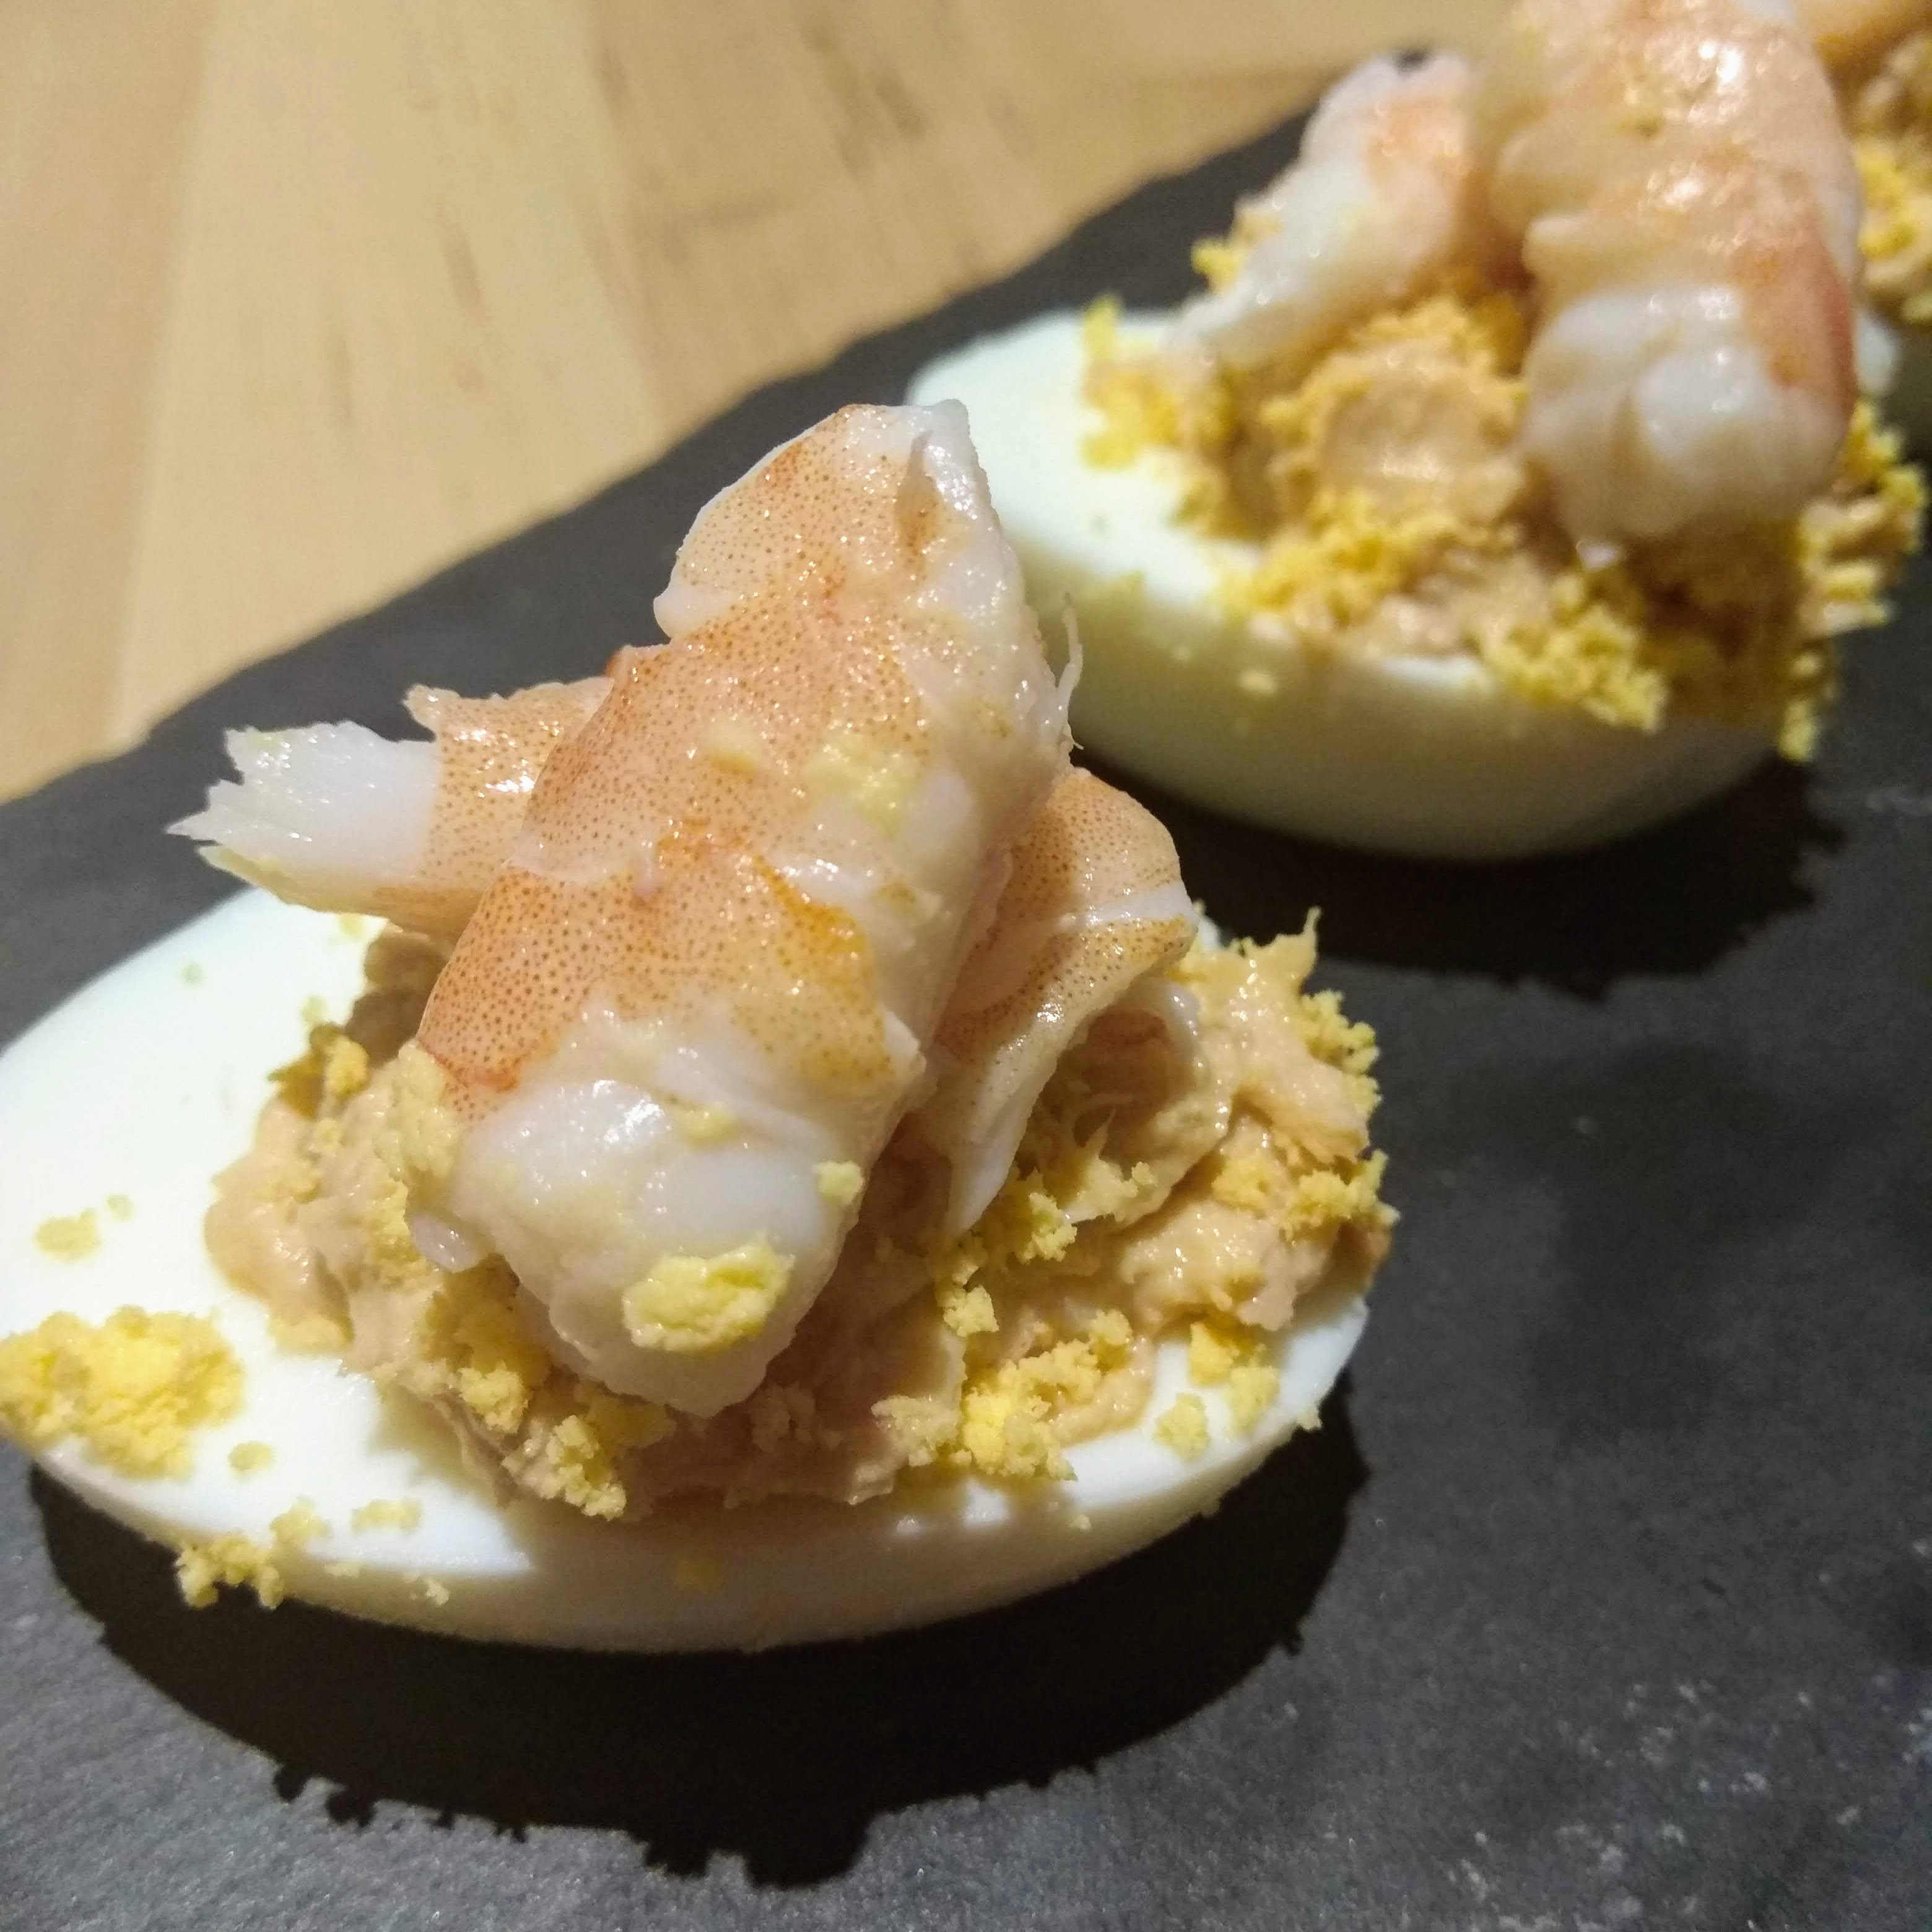 Receta: Huevos rellenos de atún y langostinos. Descúbrela en: www.cocinandoconlola.com